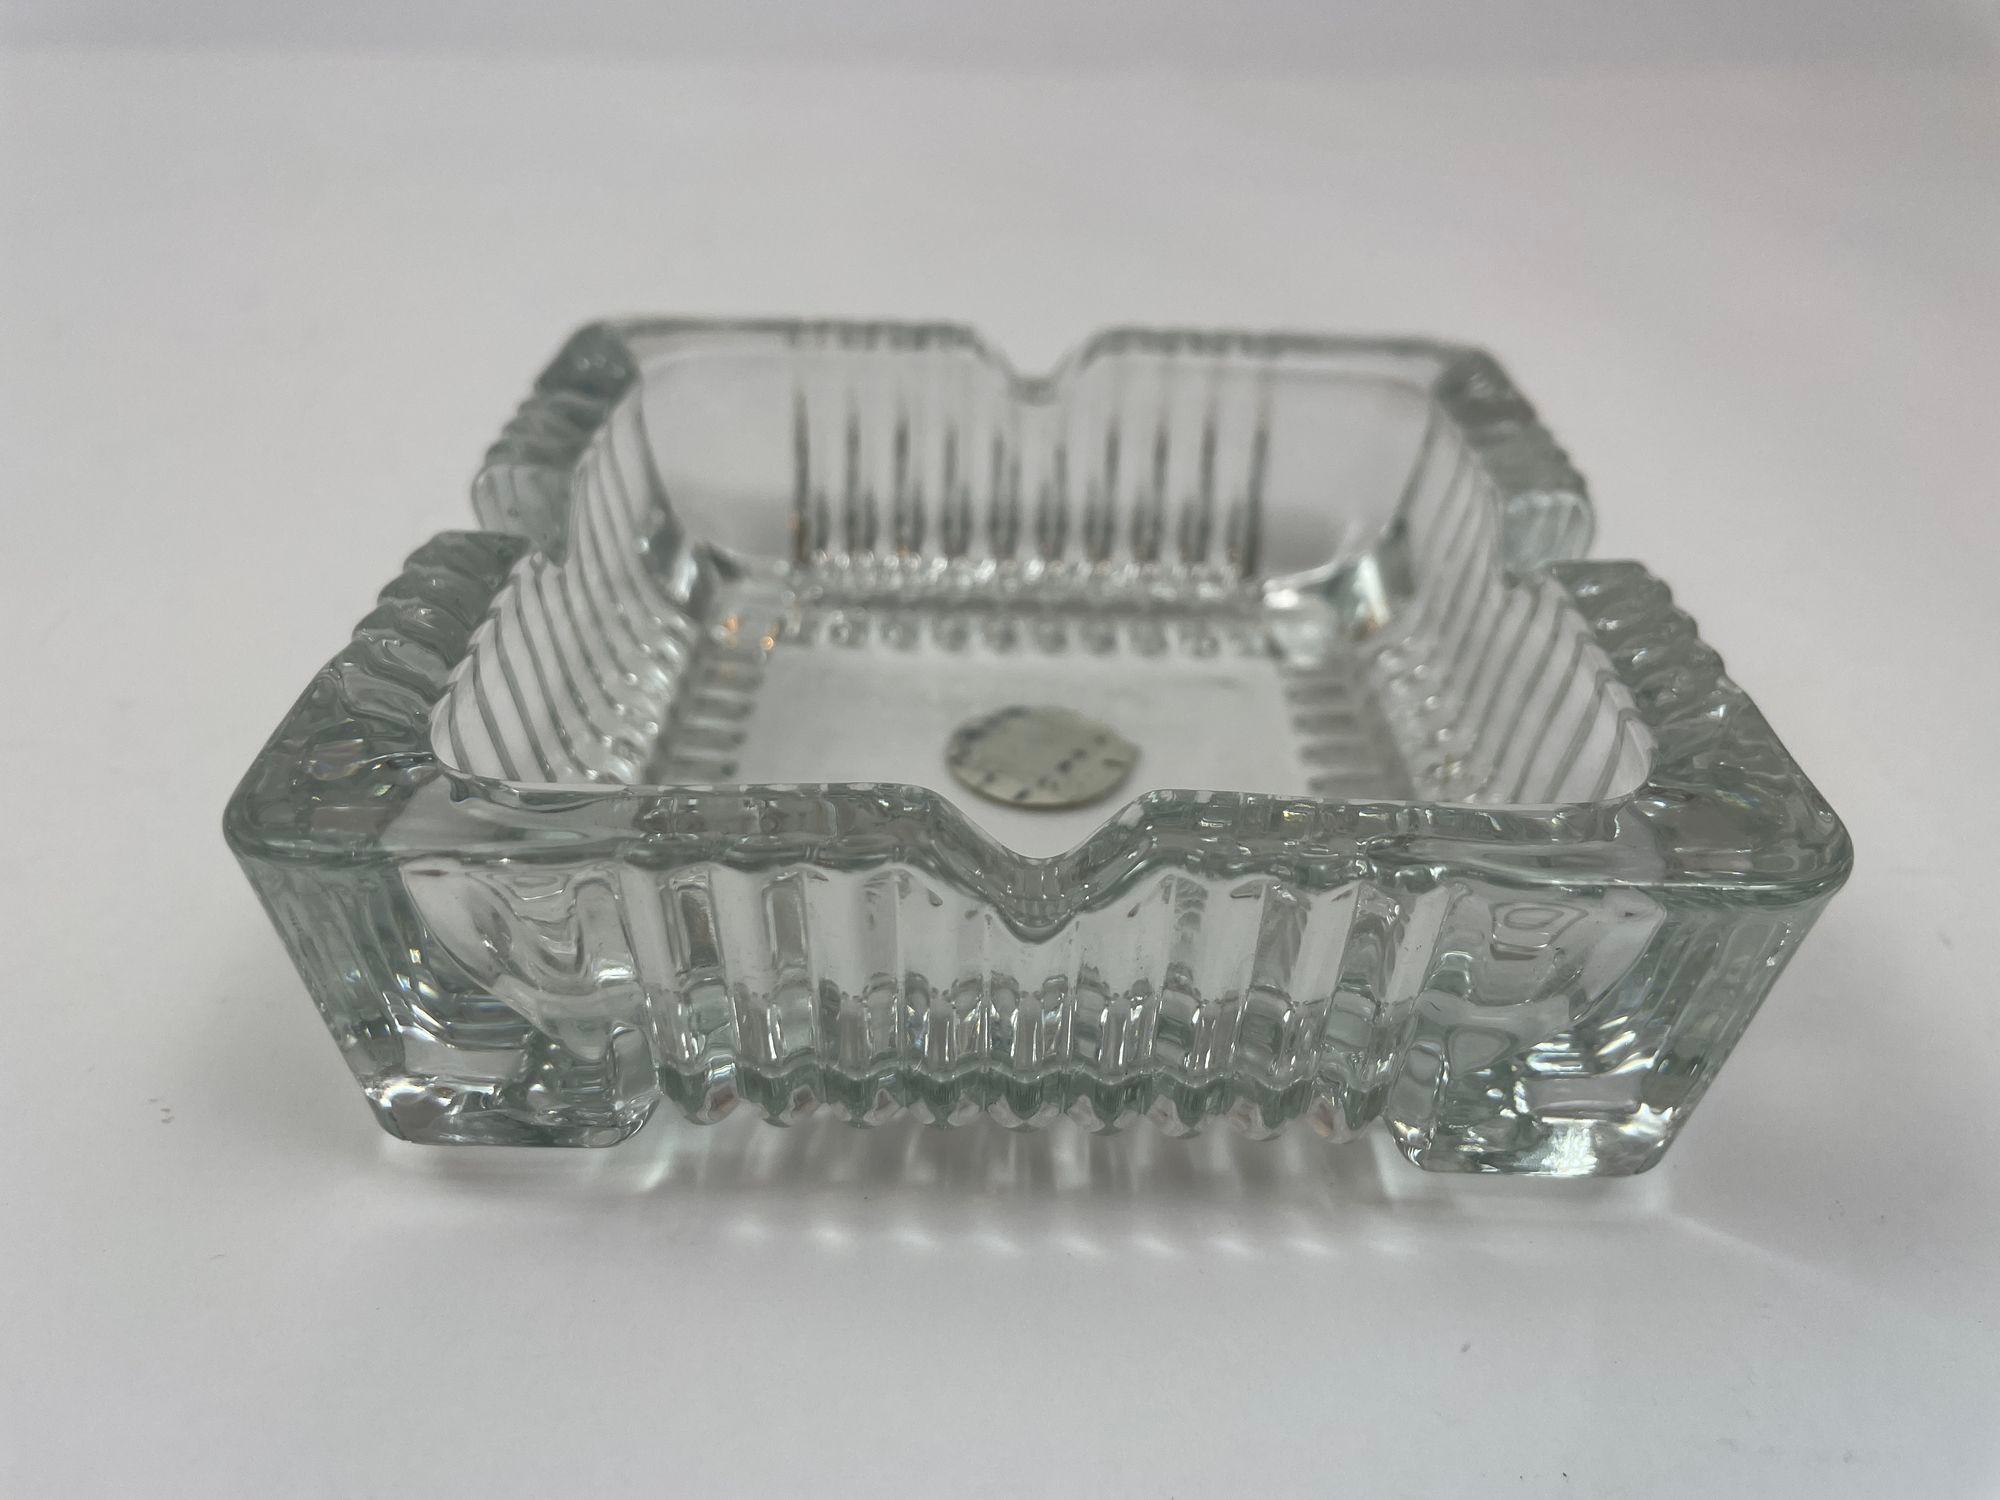 Vintage Clear Cristal D'Arques Crystal Ashtray Trinket Dish France Cut Glass Square Catchall.
Großer, quadratischer Aschenbecher aus geschliffenem Glas mit schöner, detaillierter Verglasung und 4 Ablageflächen für Ihre Rauchutensilien.
Cristal